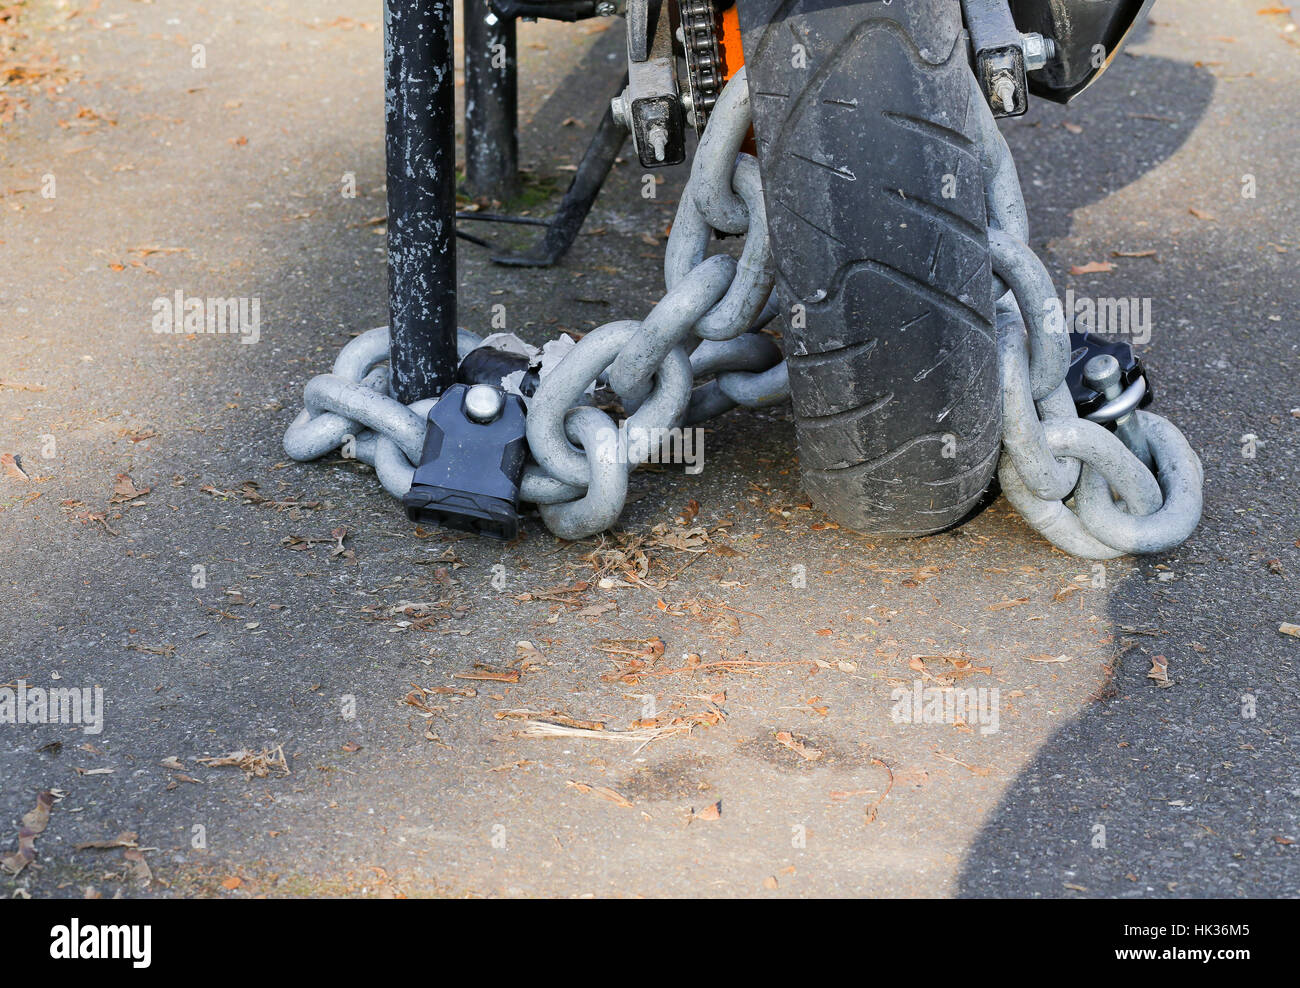 Motociclo catena antifurto con lucchetto serratura di sicurezza sulla ruota posteriore, la protezione contro il furto Foto Stock